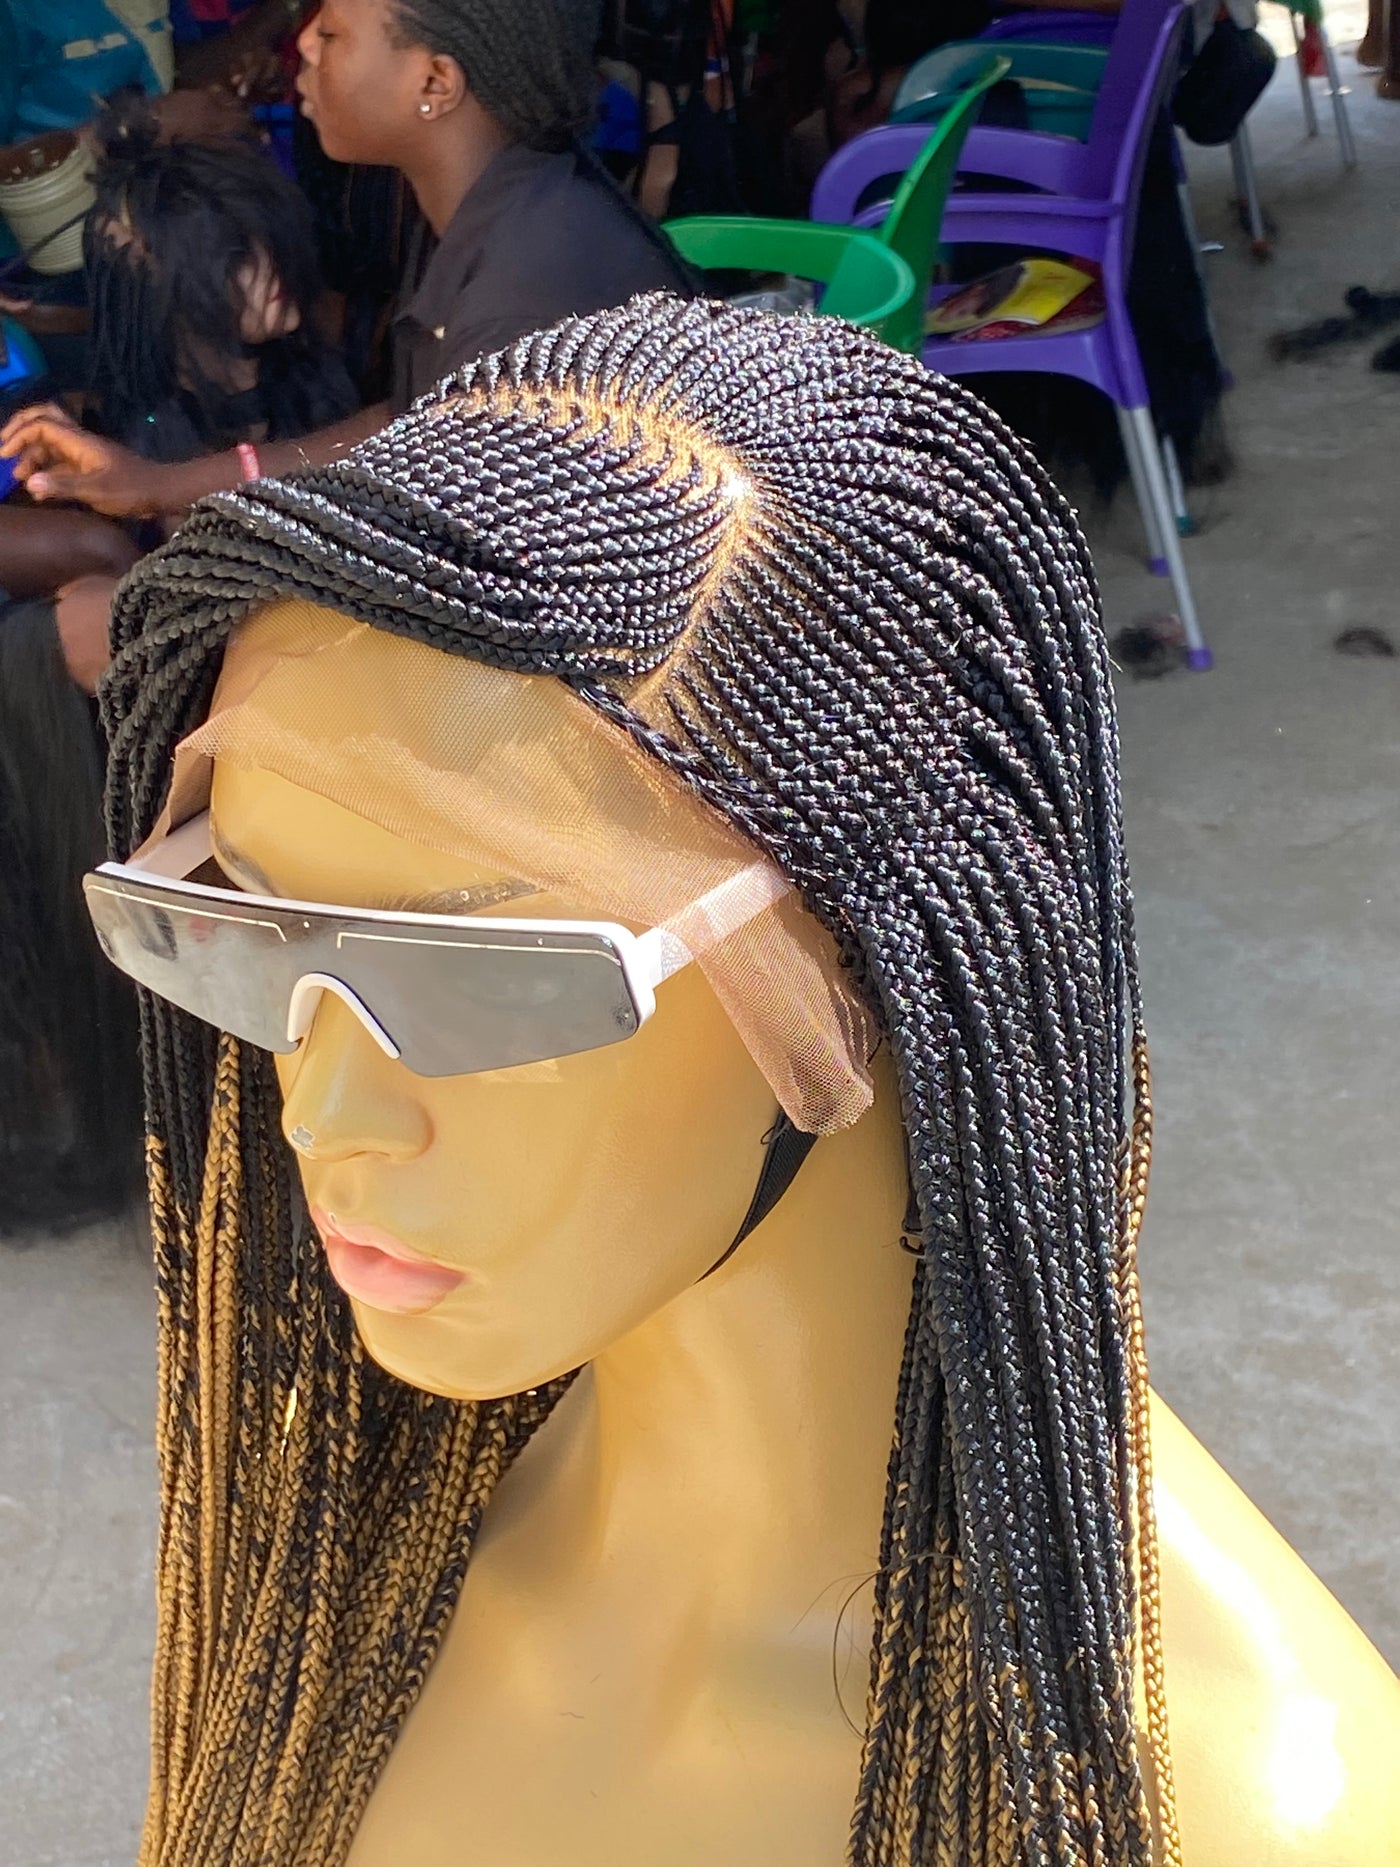 Cornrow Braid Wig - (13x4 Lace Frontal Multi color) - Wanita Poshglad Braided Wigs Cornrow Braid Wig